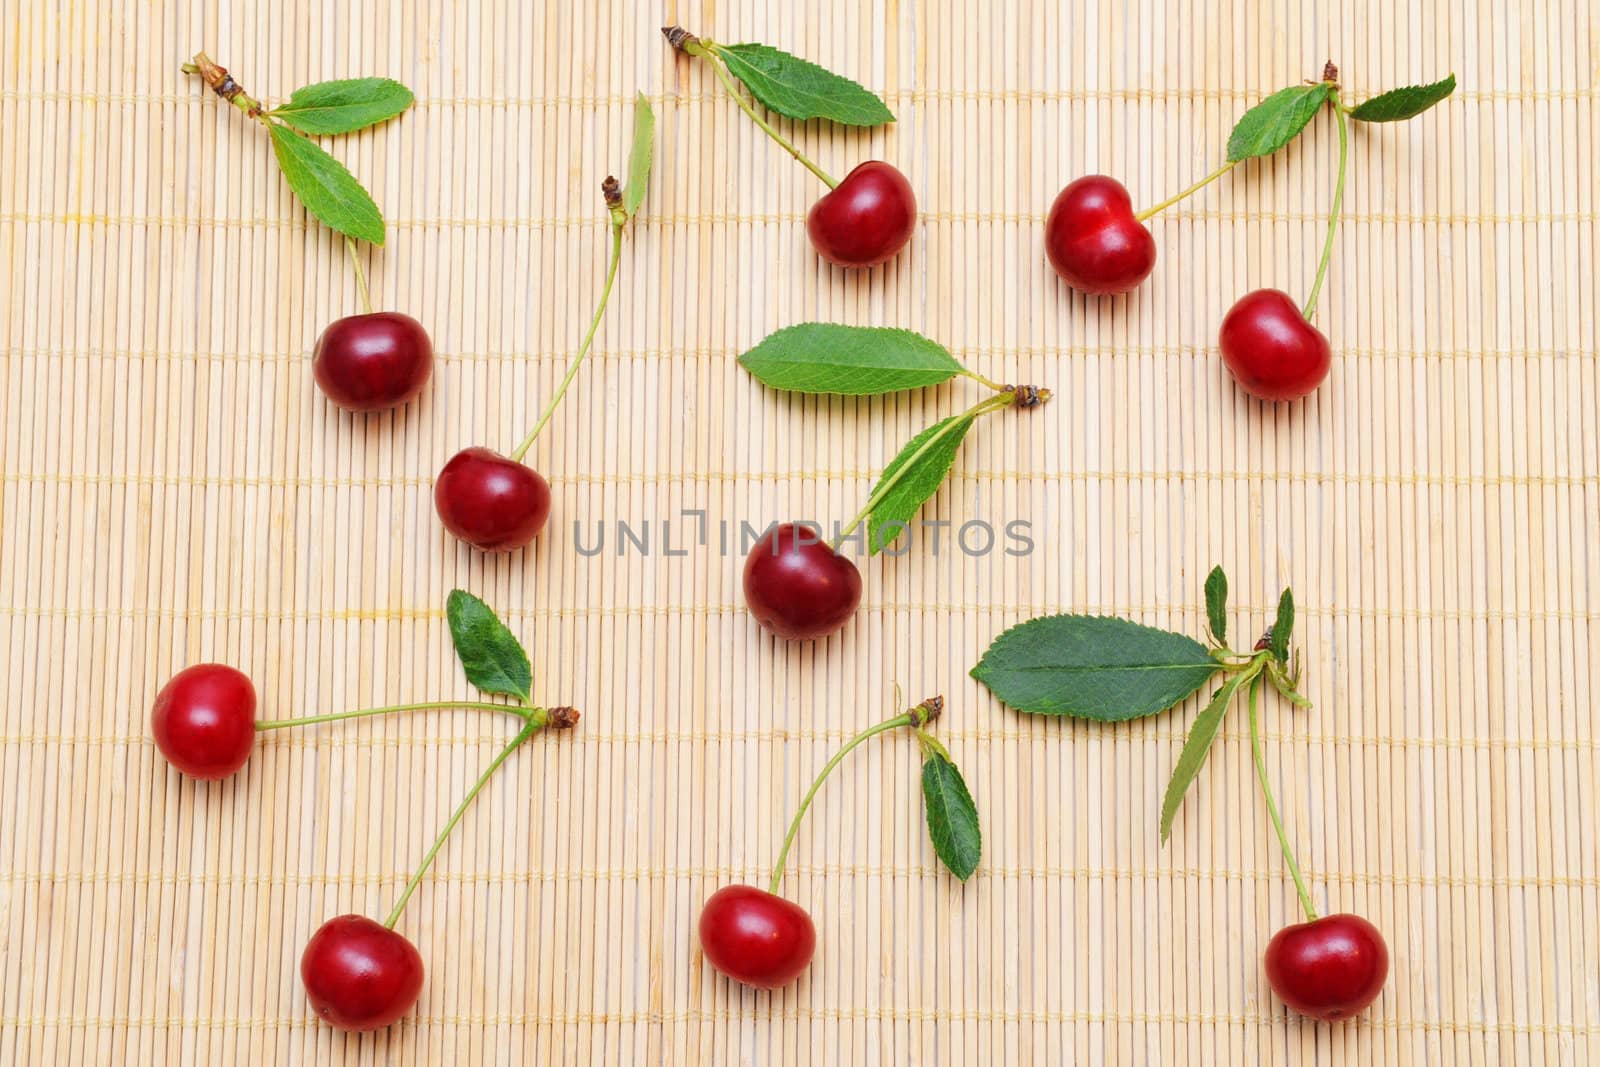 Cherries by Yaurinko